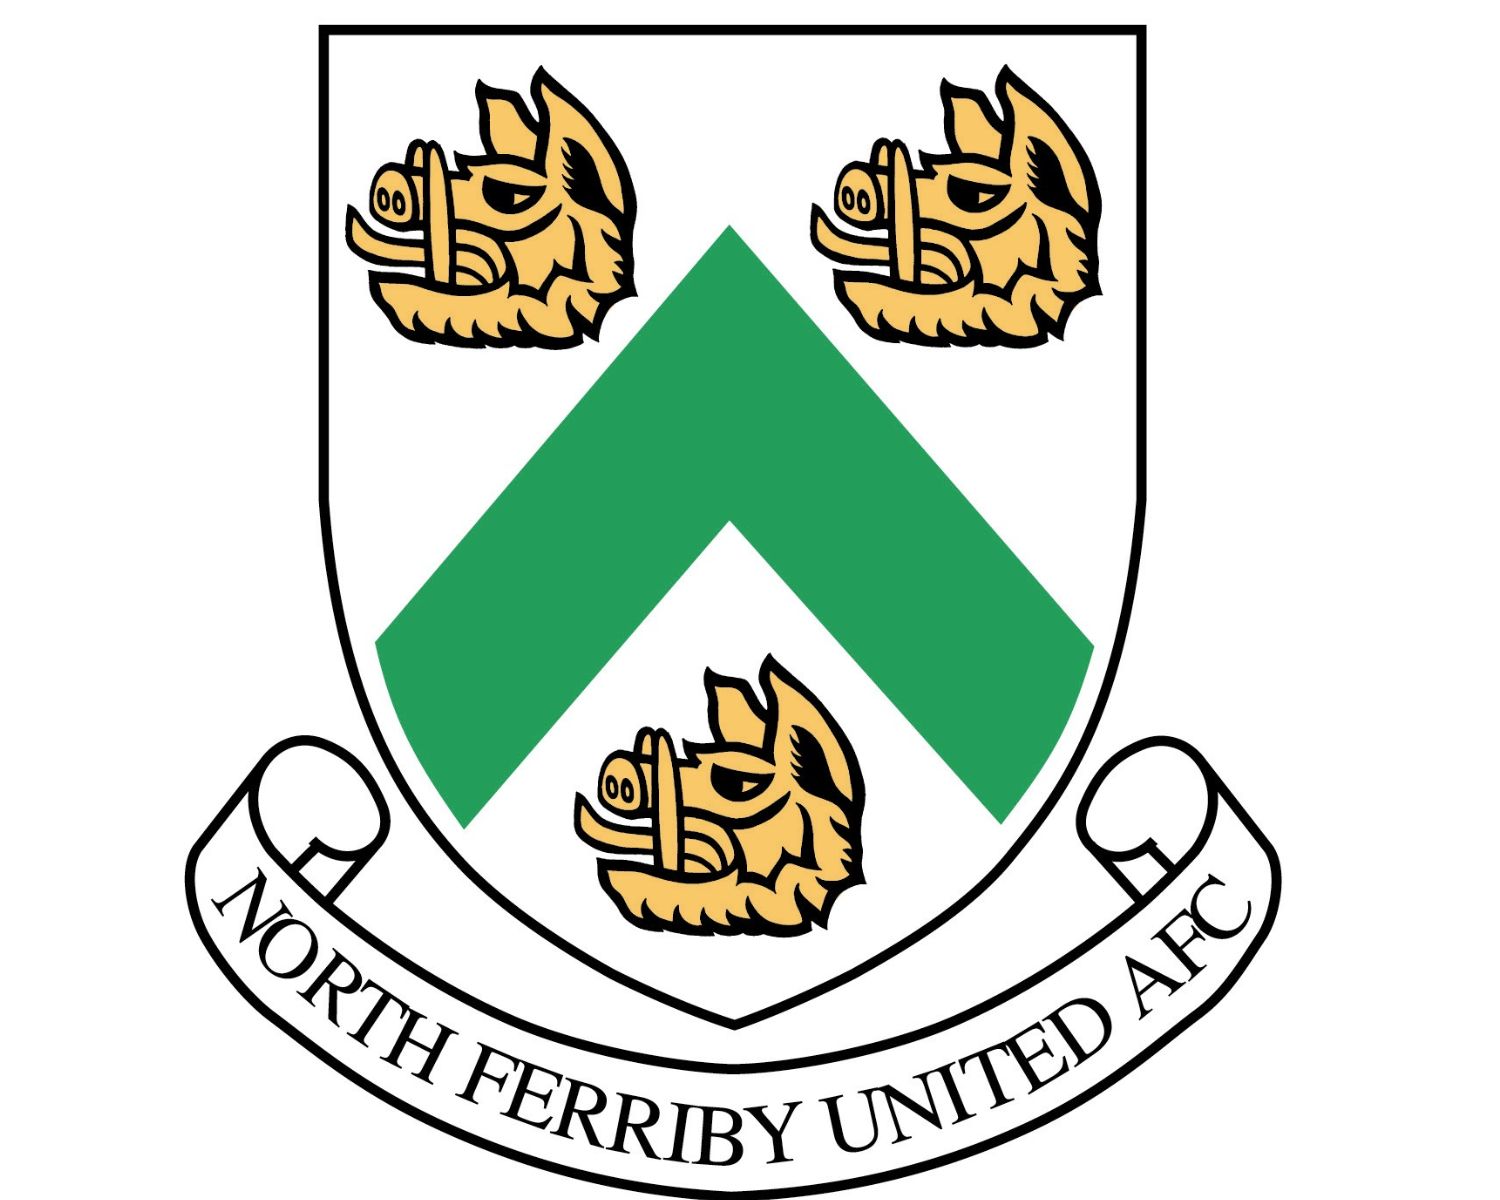 north-ferriby-united-afc-16-football-club-facts